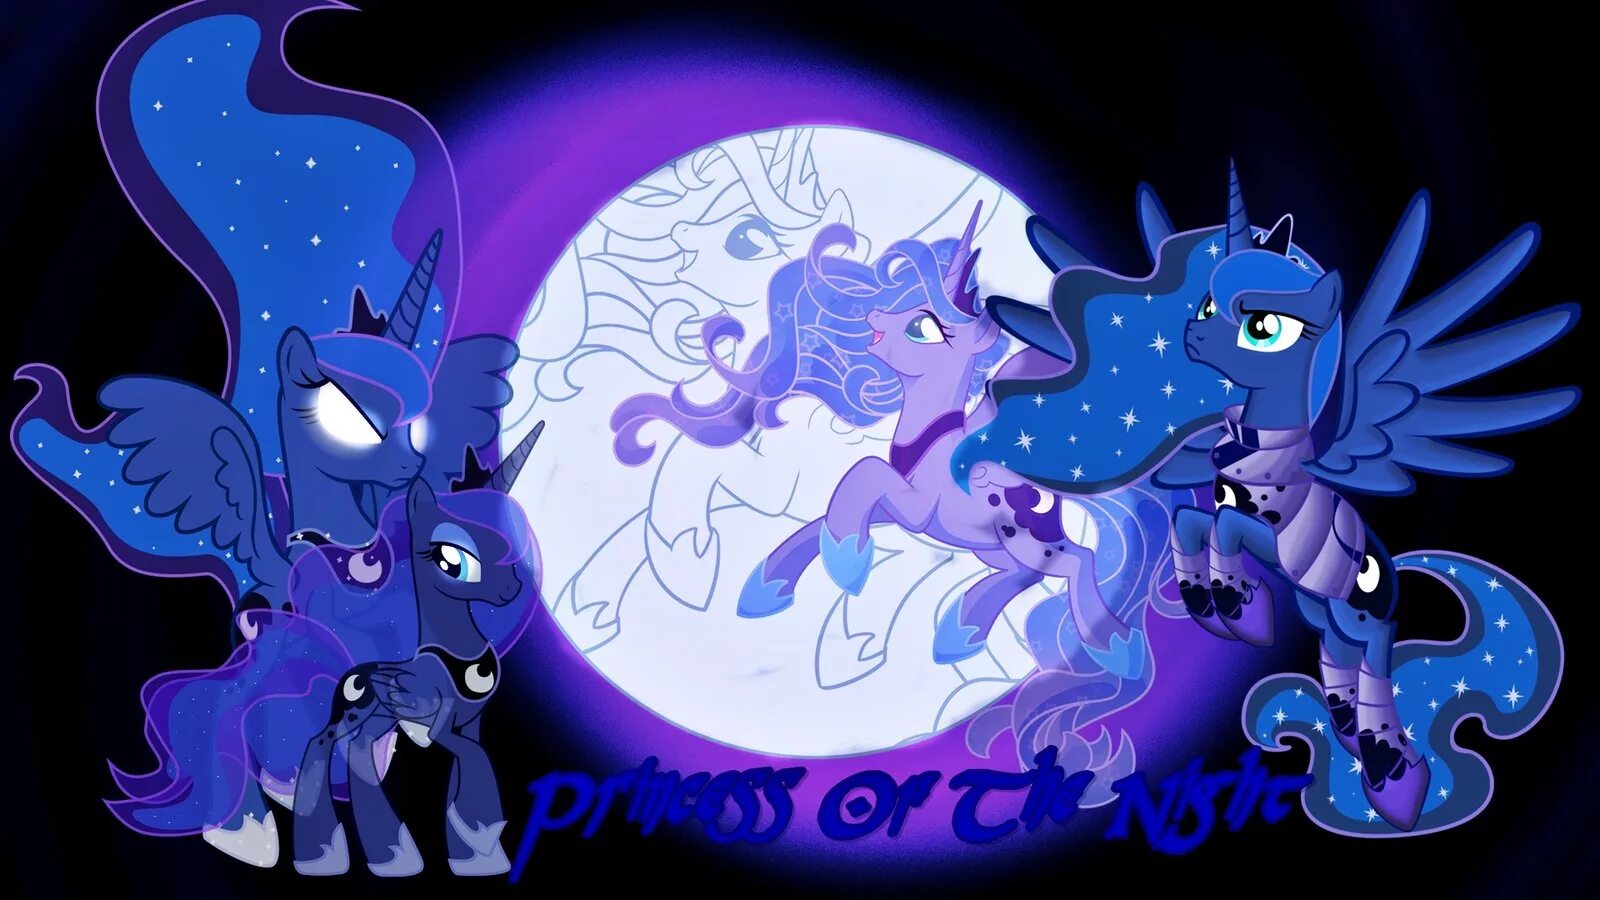 Луна МЛП. Найтмер Мун. Принцесса Луна и Селестия магия. Принцесса Луна май Лито пони. My little pony принцесса луна